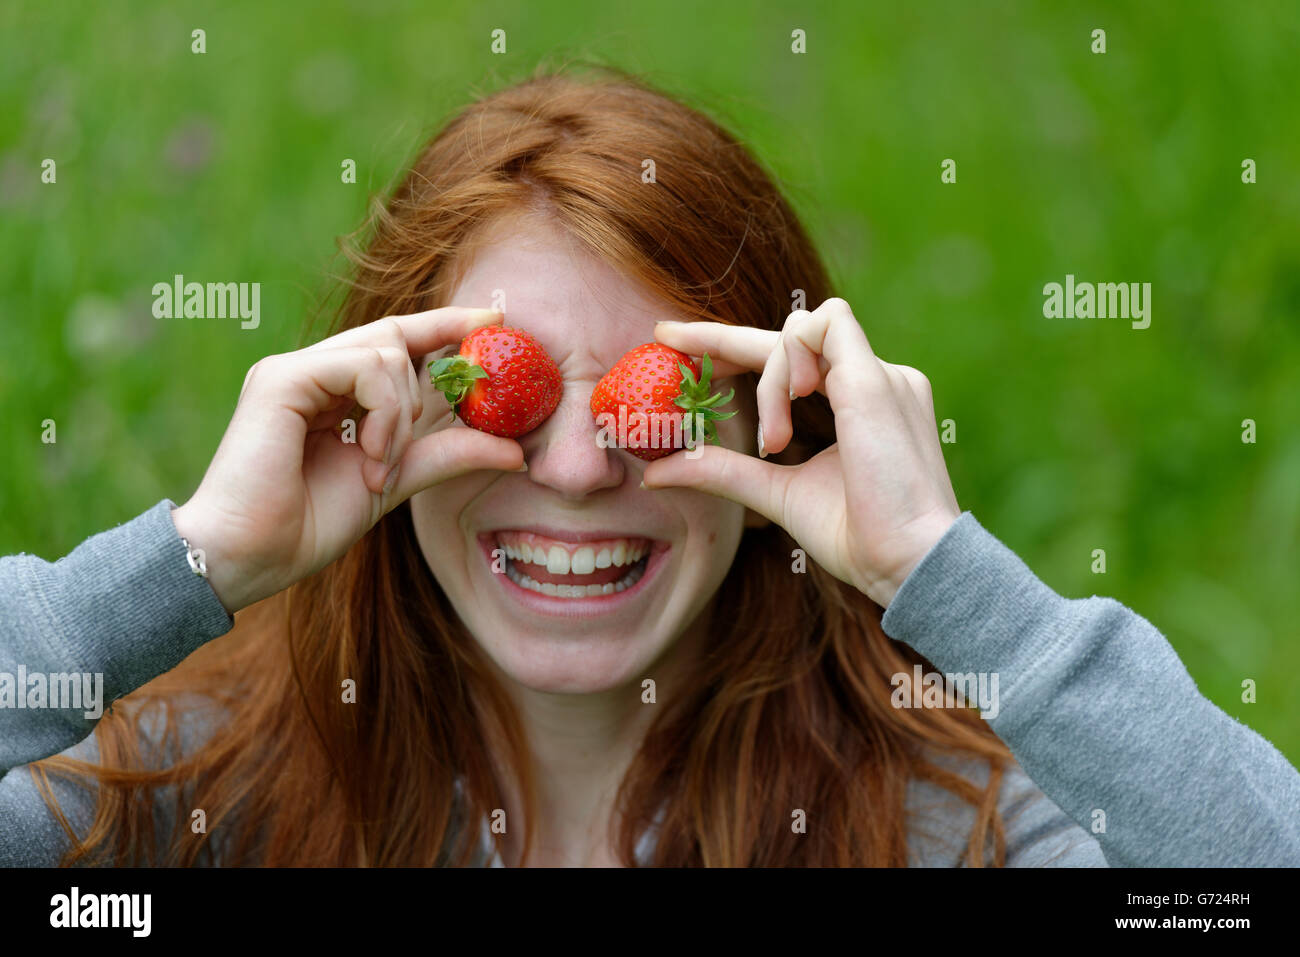 Jeune fille, une adolescente avec des fraises, devant les yeux, Bavière, Allemagne Banque D'Images